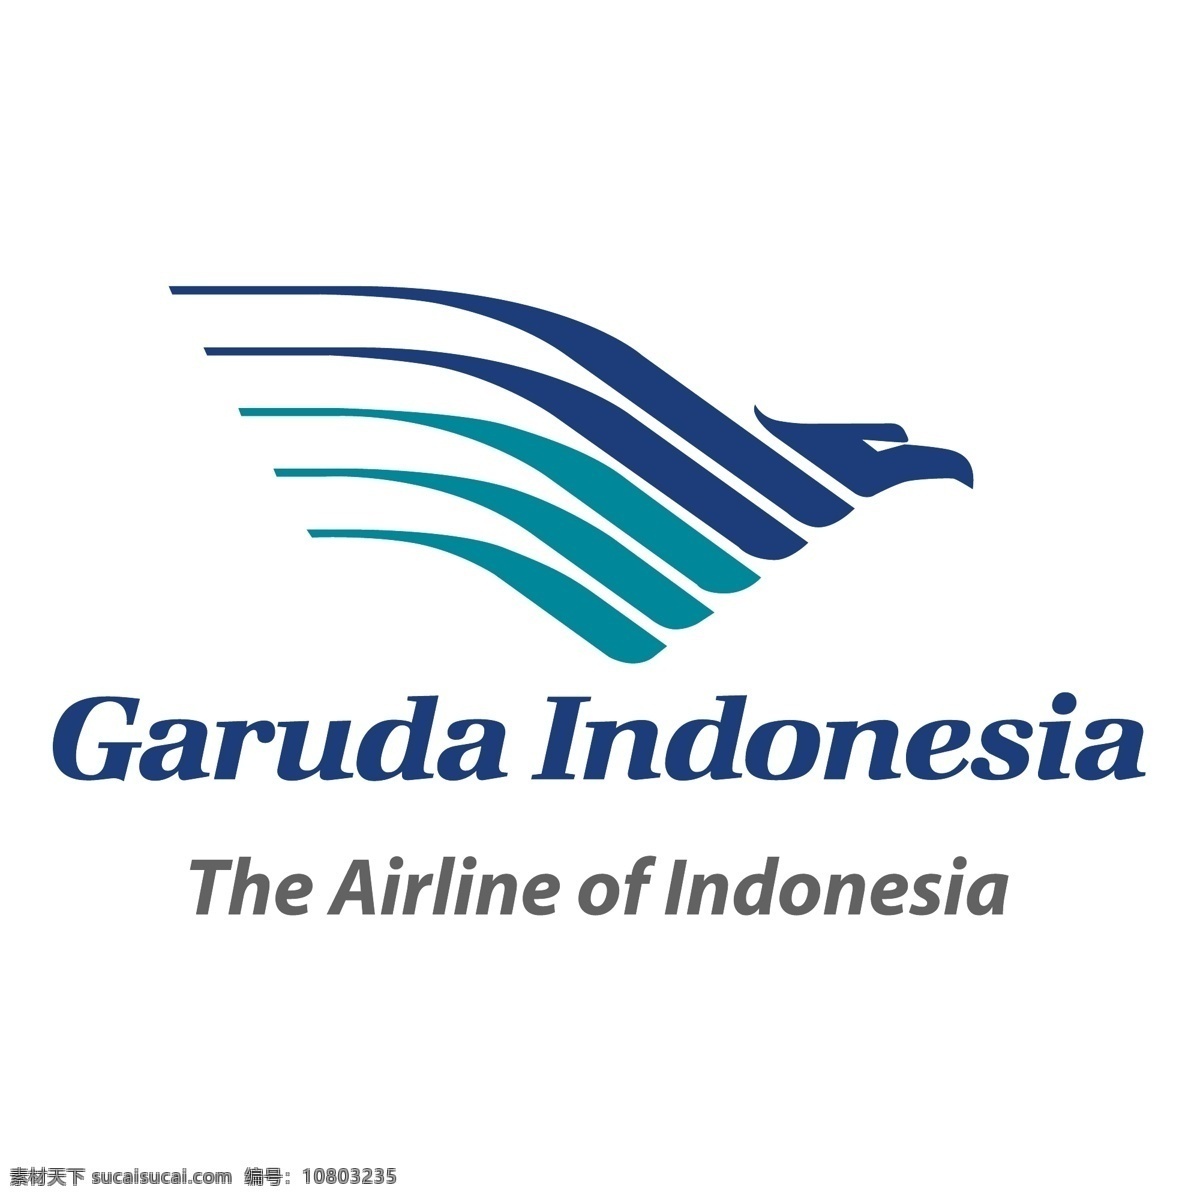 印度尼西亚 航空公司 自由 鹰 标志 标识 psd源文件 logo设计